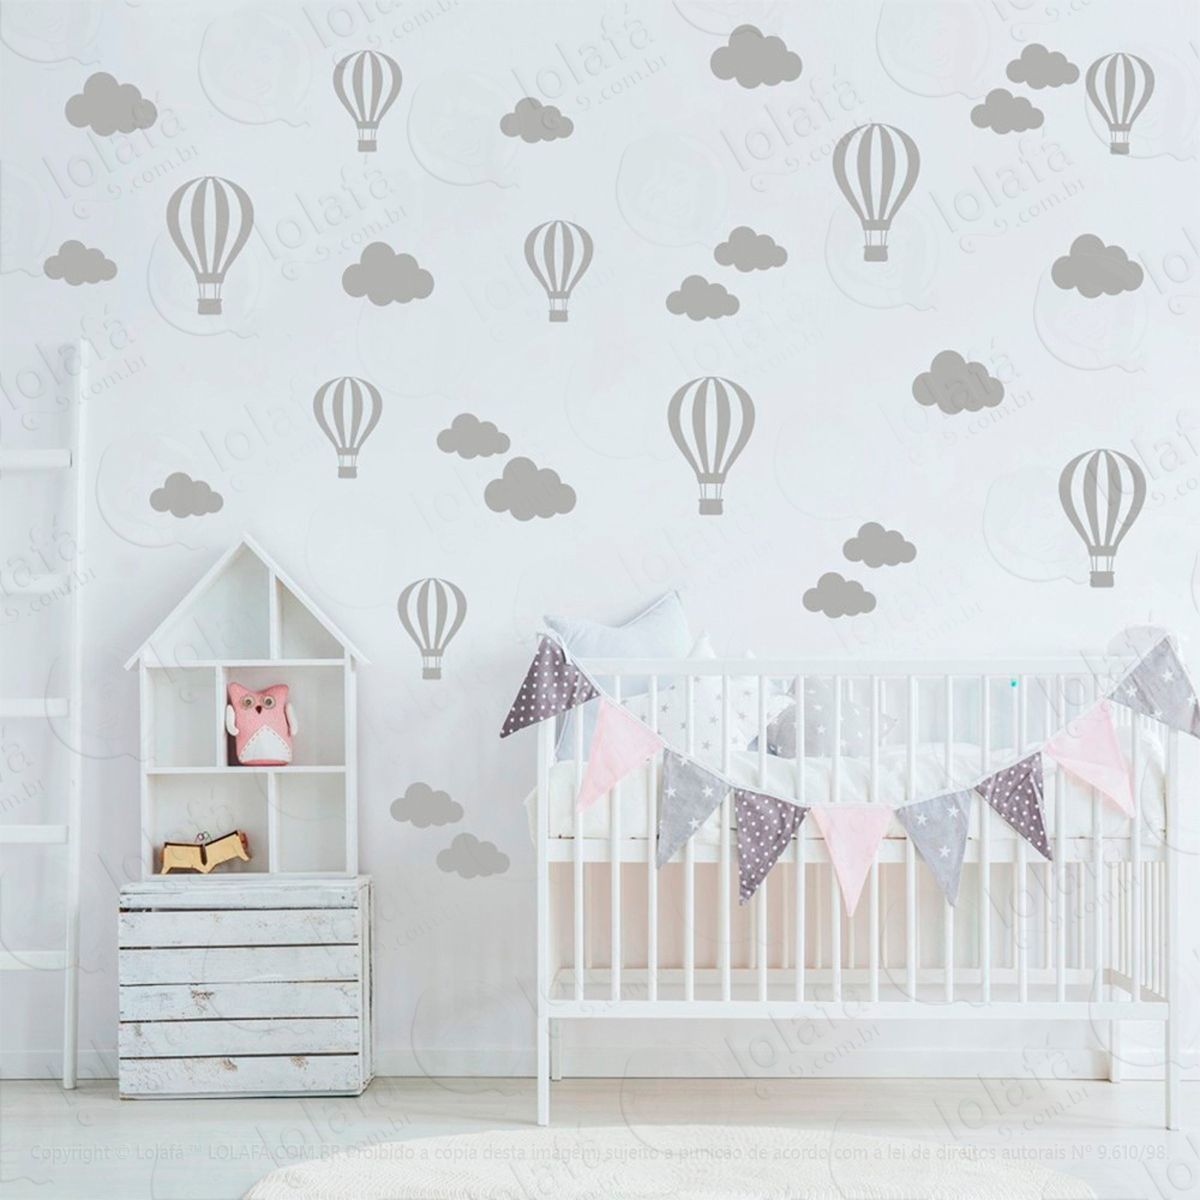 adesivos nuvens e balões 50 peças adesivos para quarto de bebê infantil - mod:833